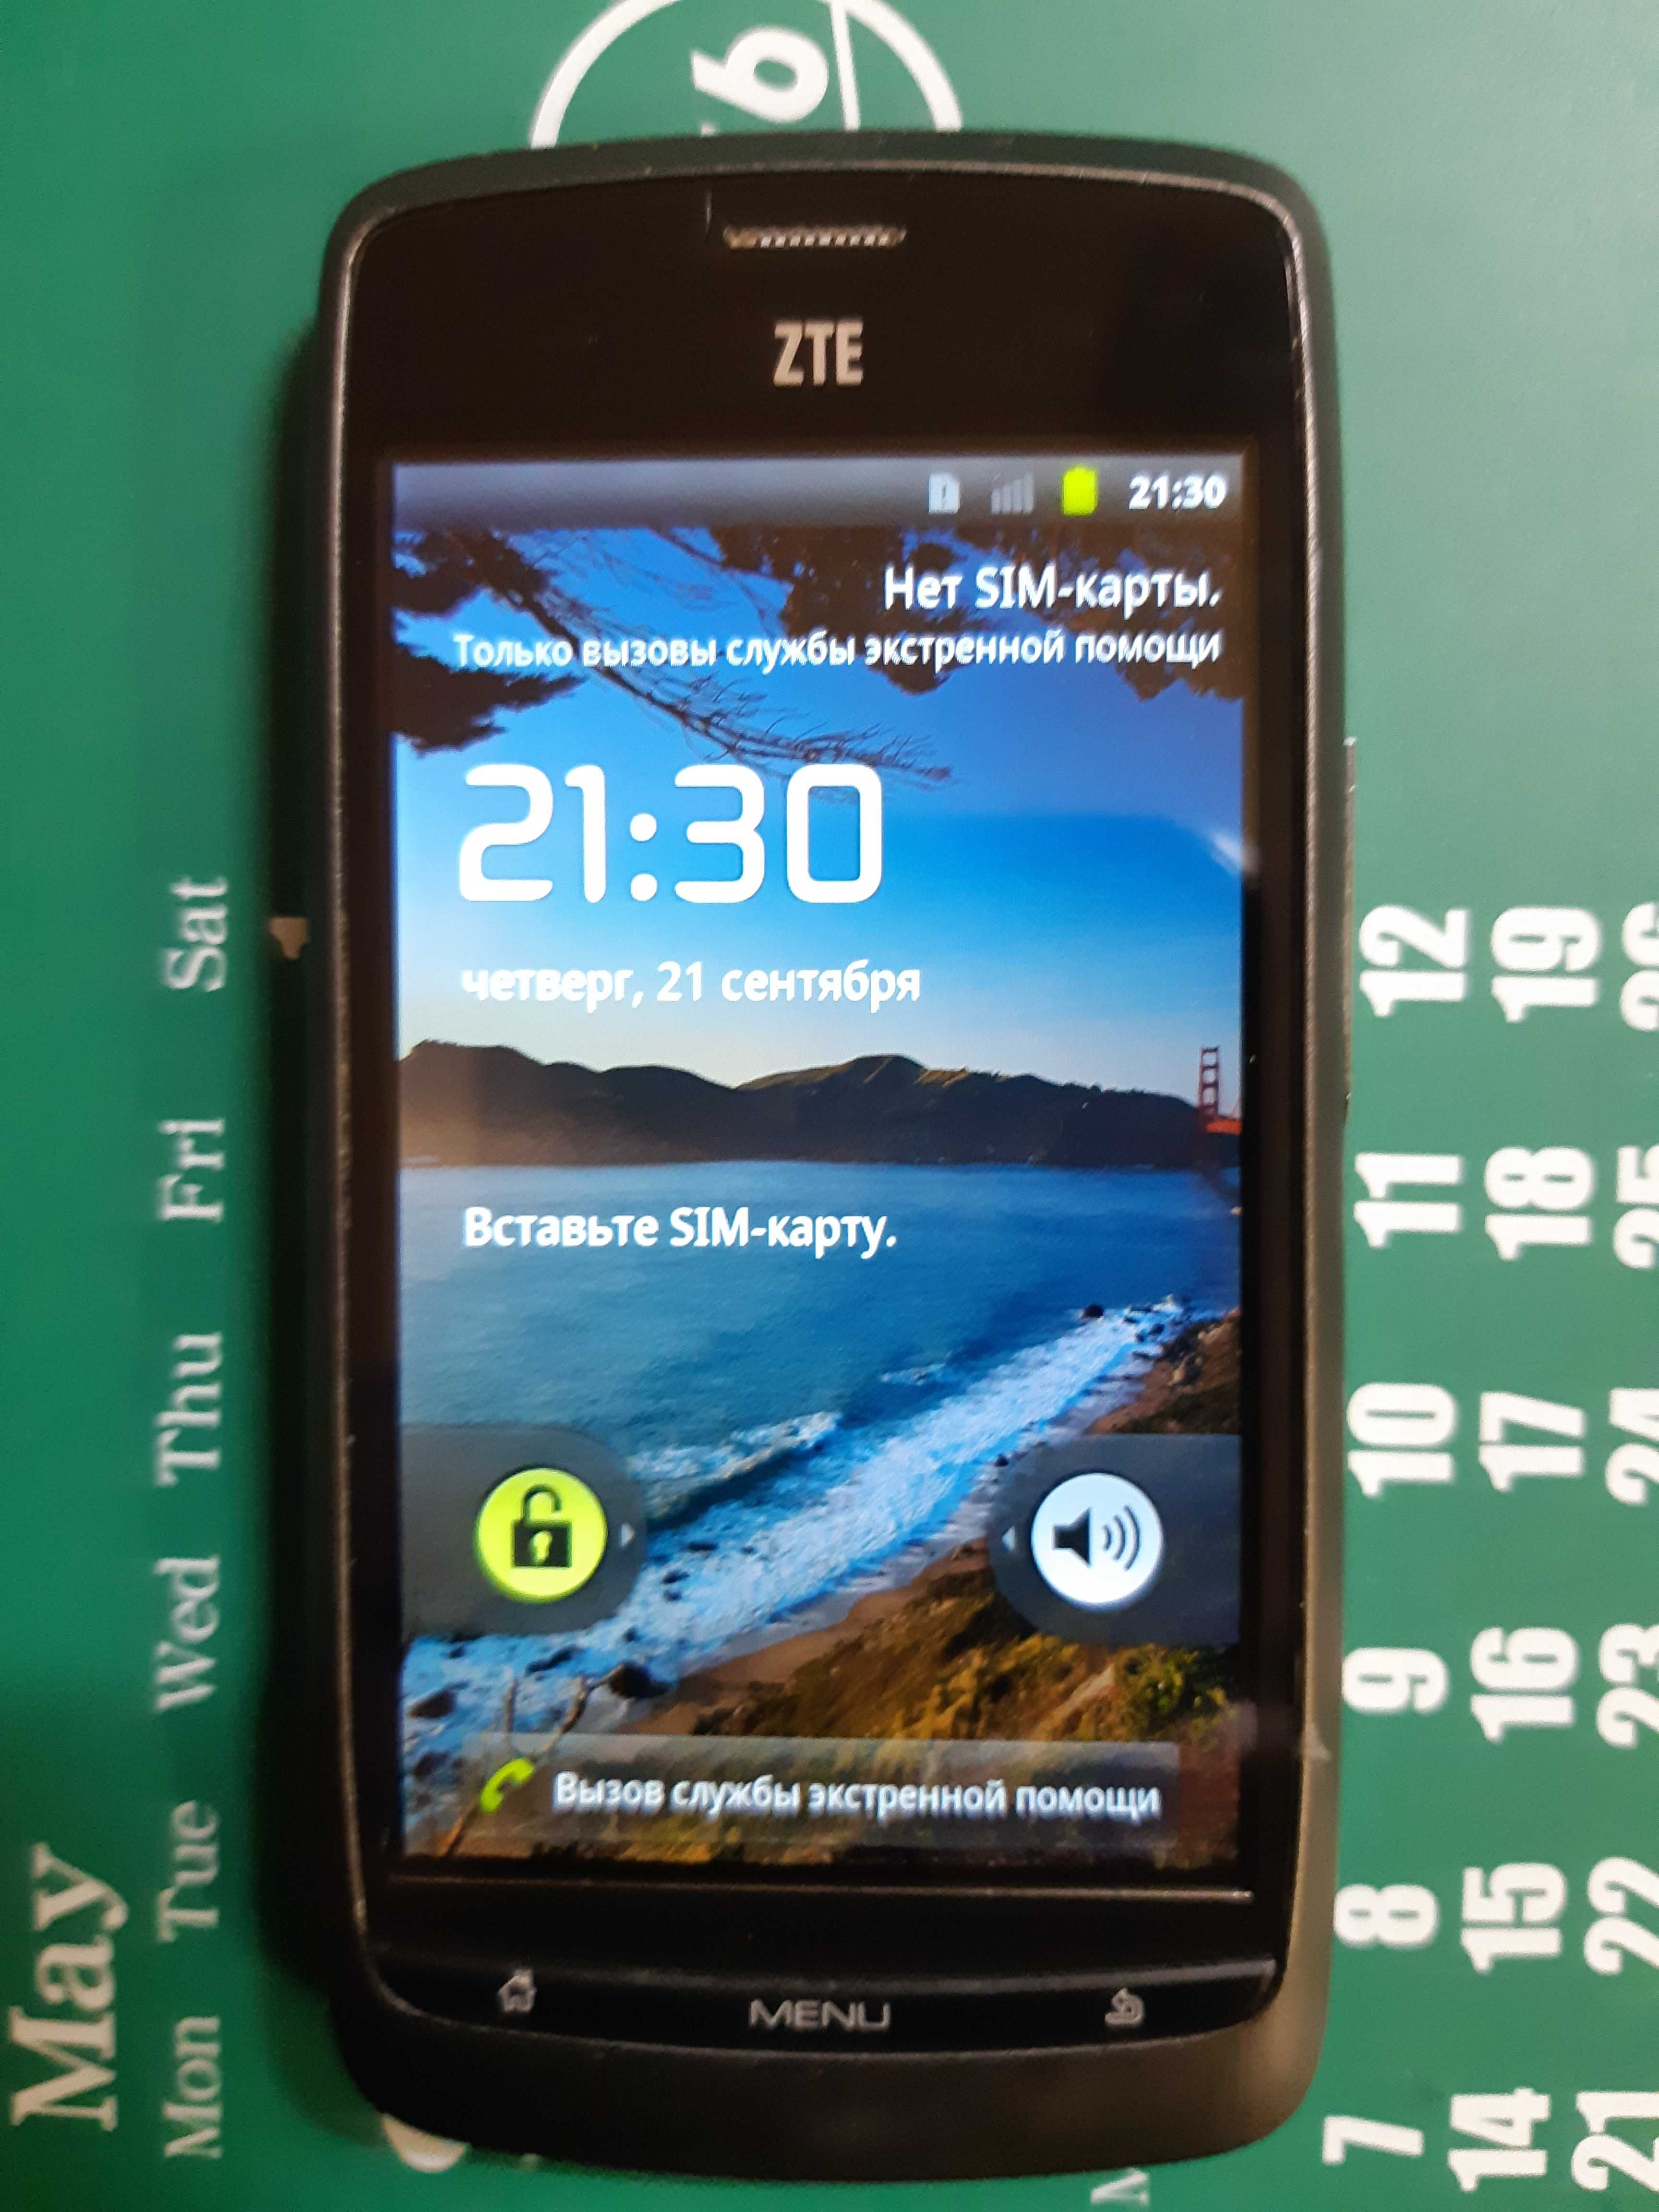 ZTE Blade Grey смартфон